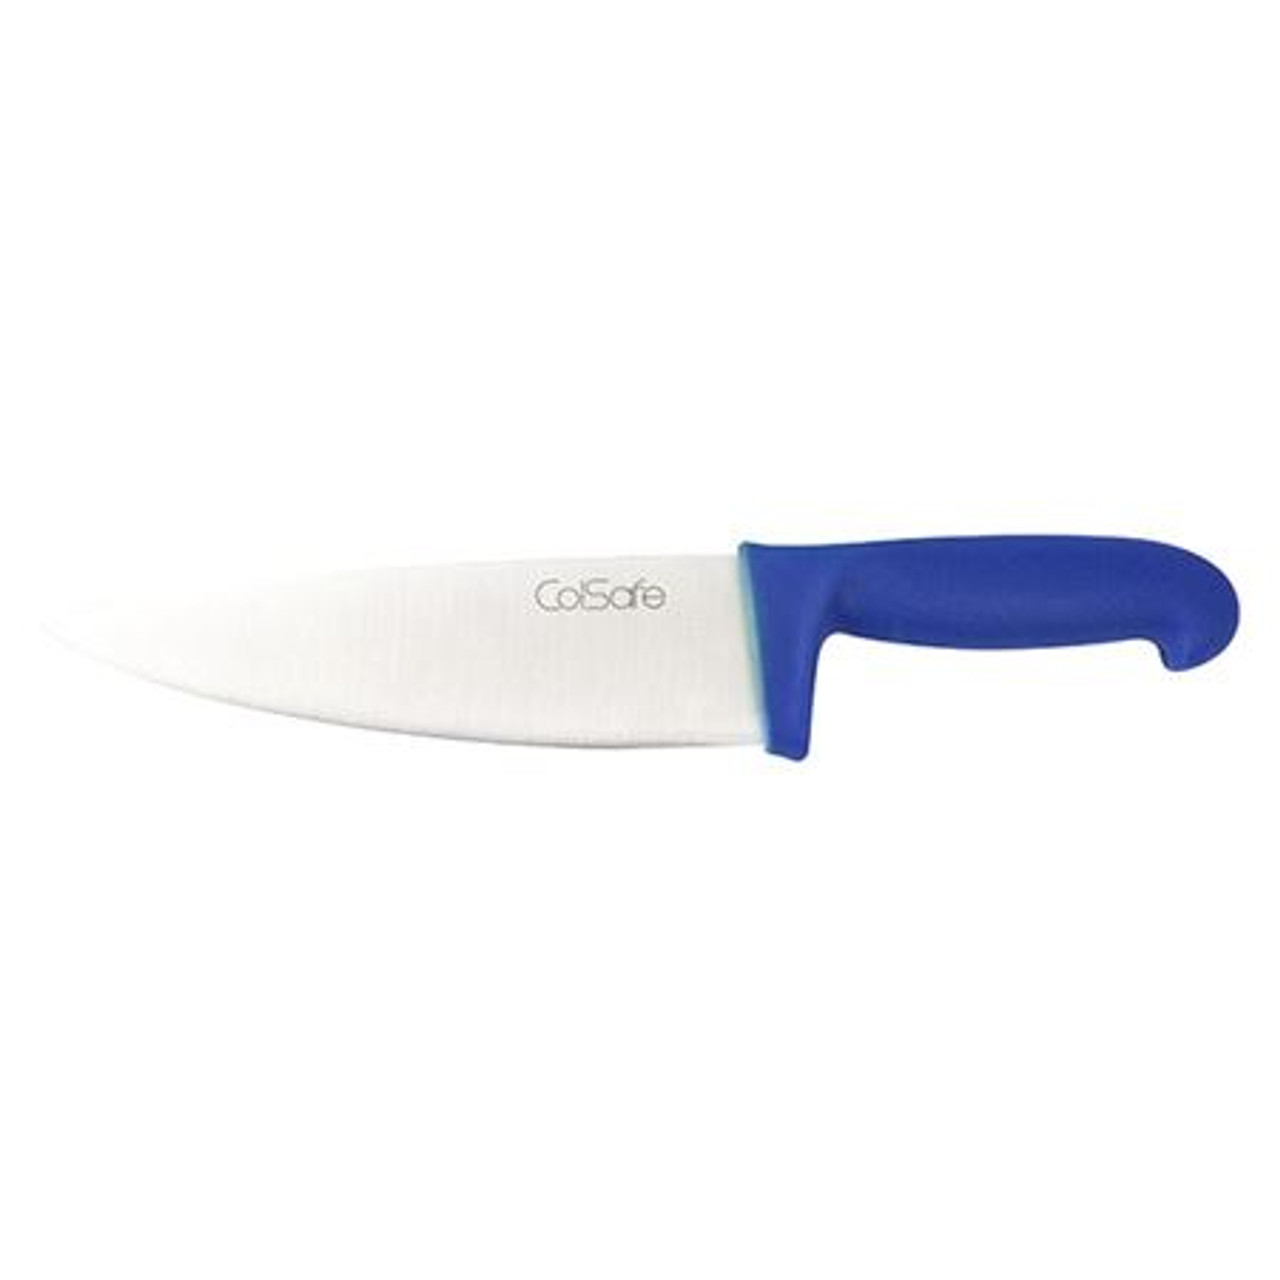 Colsafe Cooks Knife 6.5" Blue